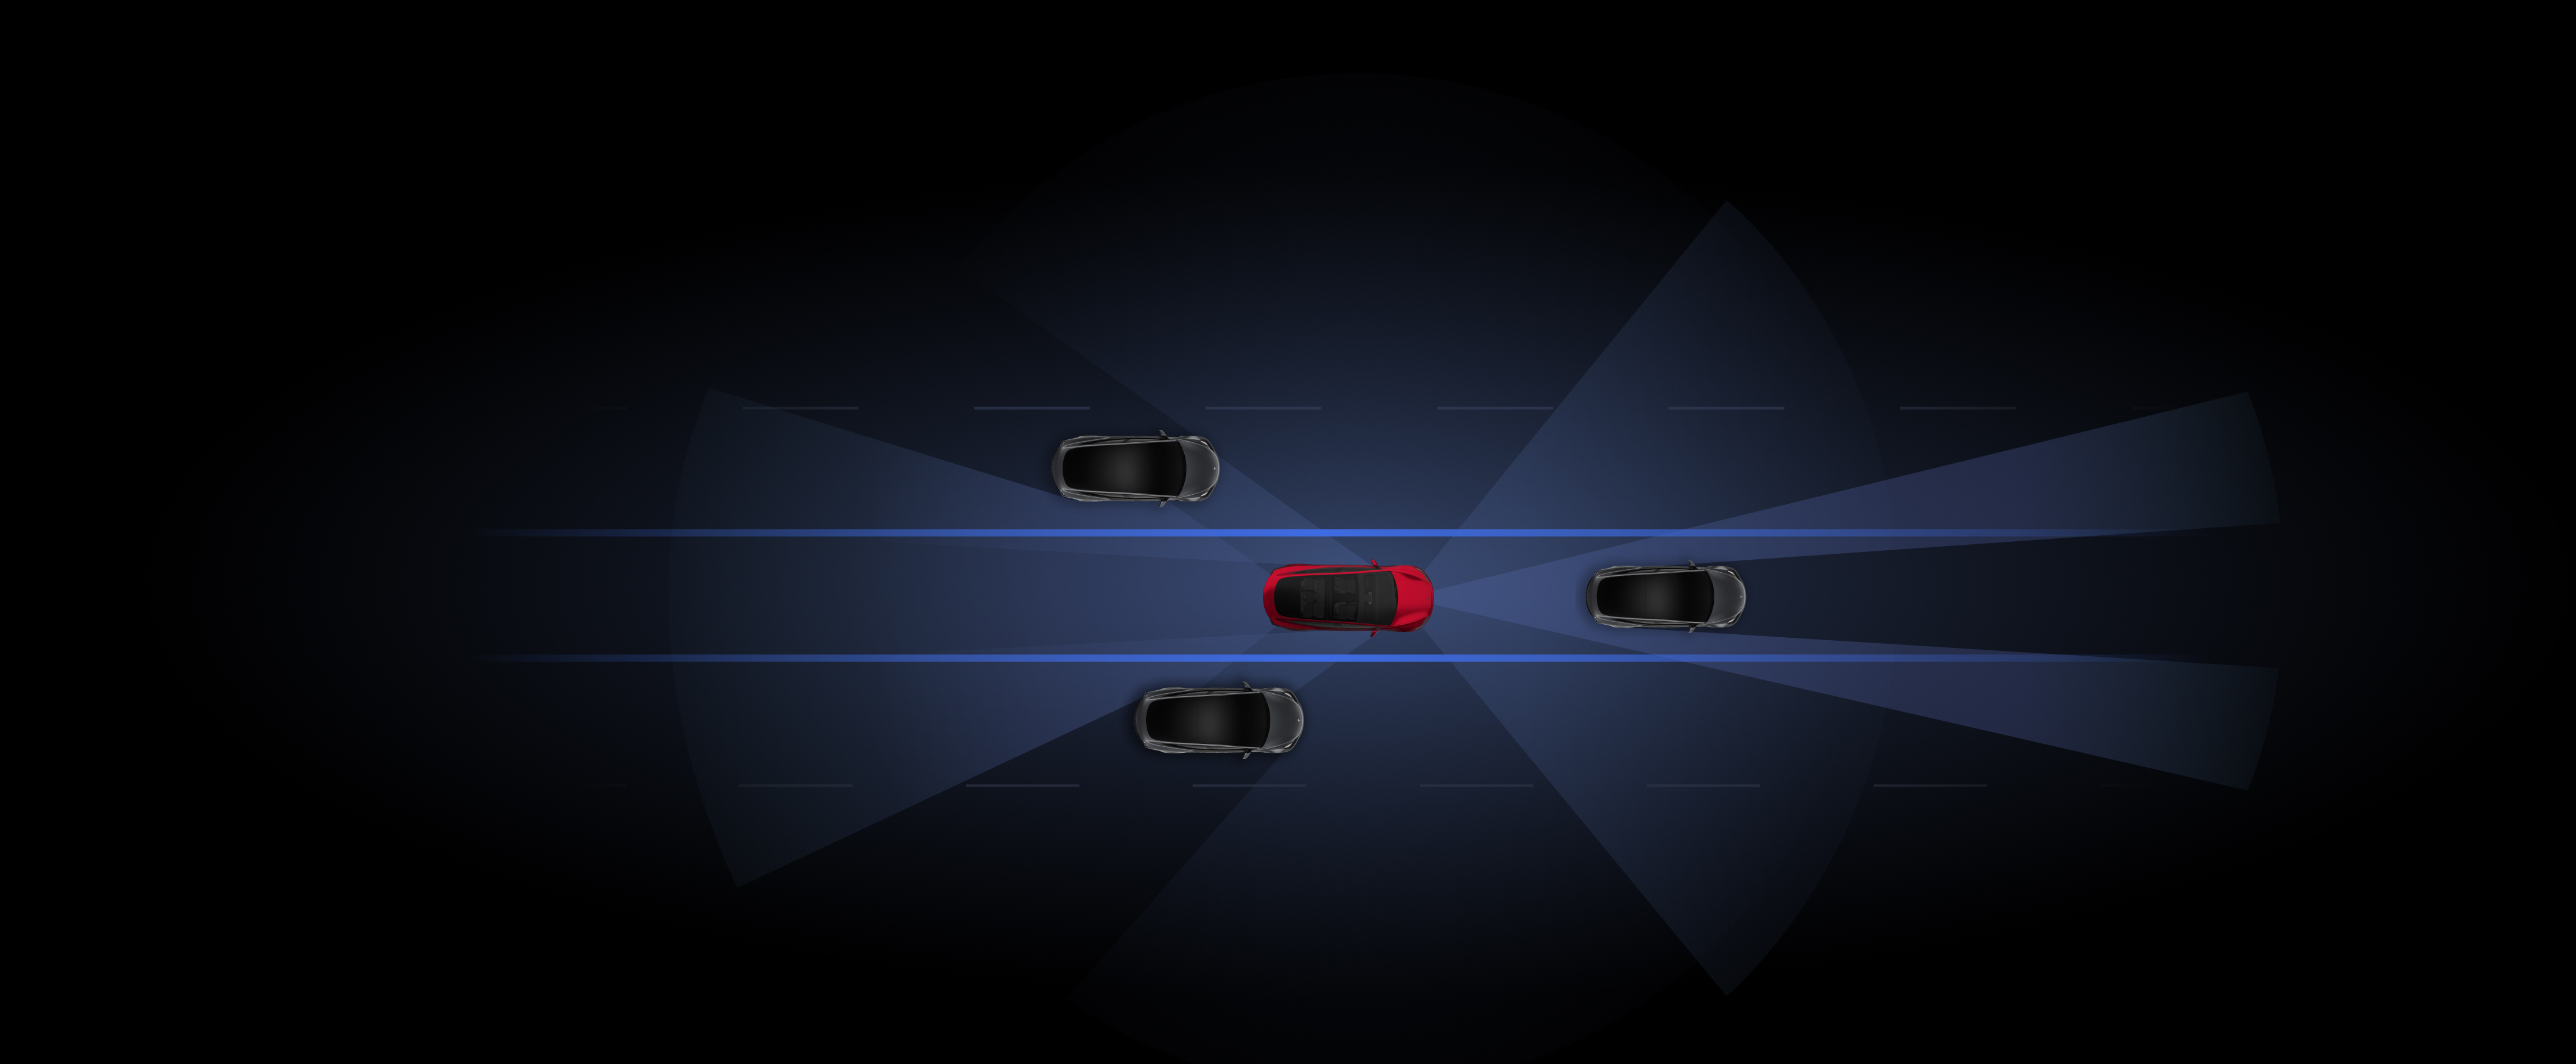 Renderovaná vizualizace vozidel Tesla v šedé a červené barvě využívajících funkce Autopilot. 